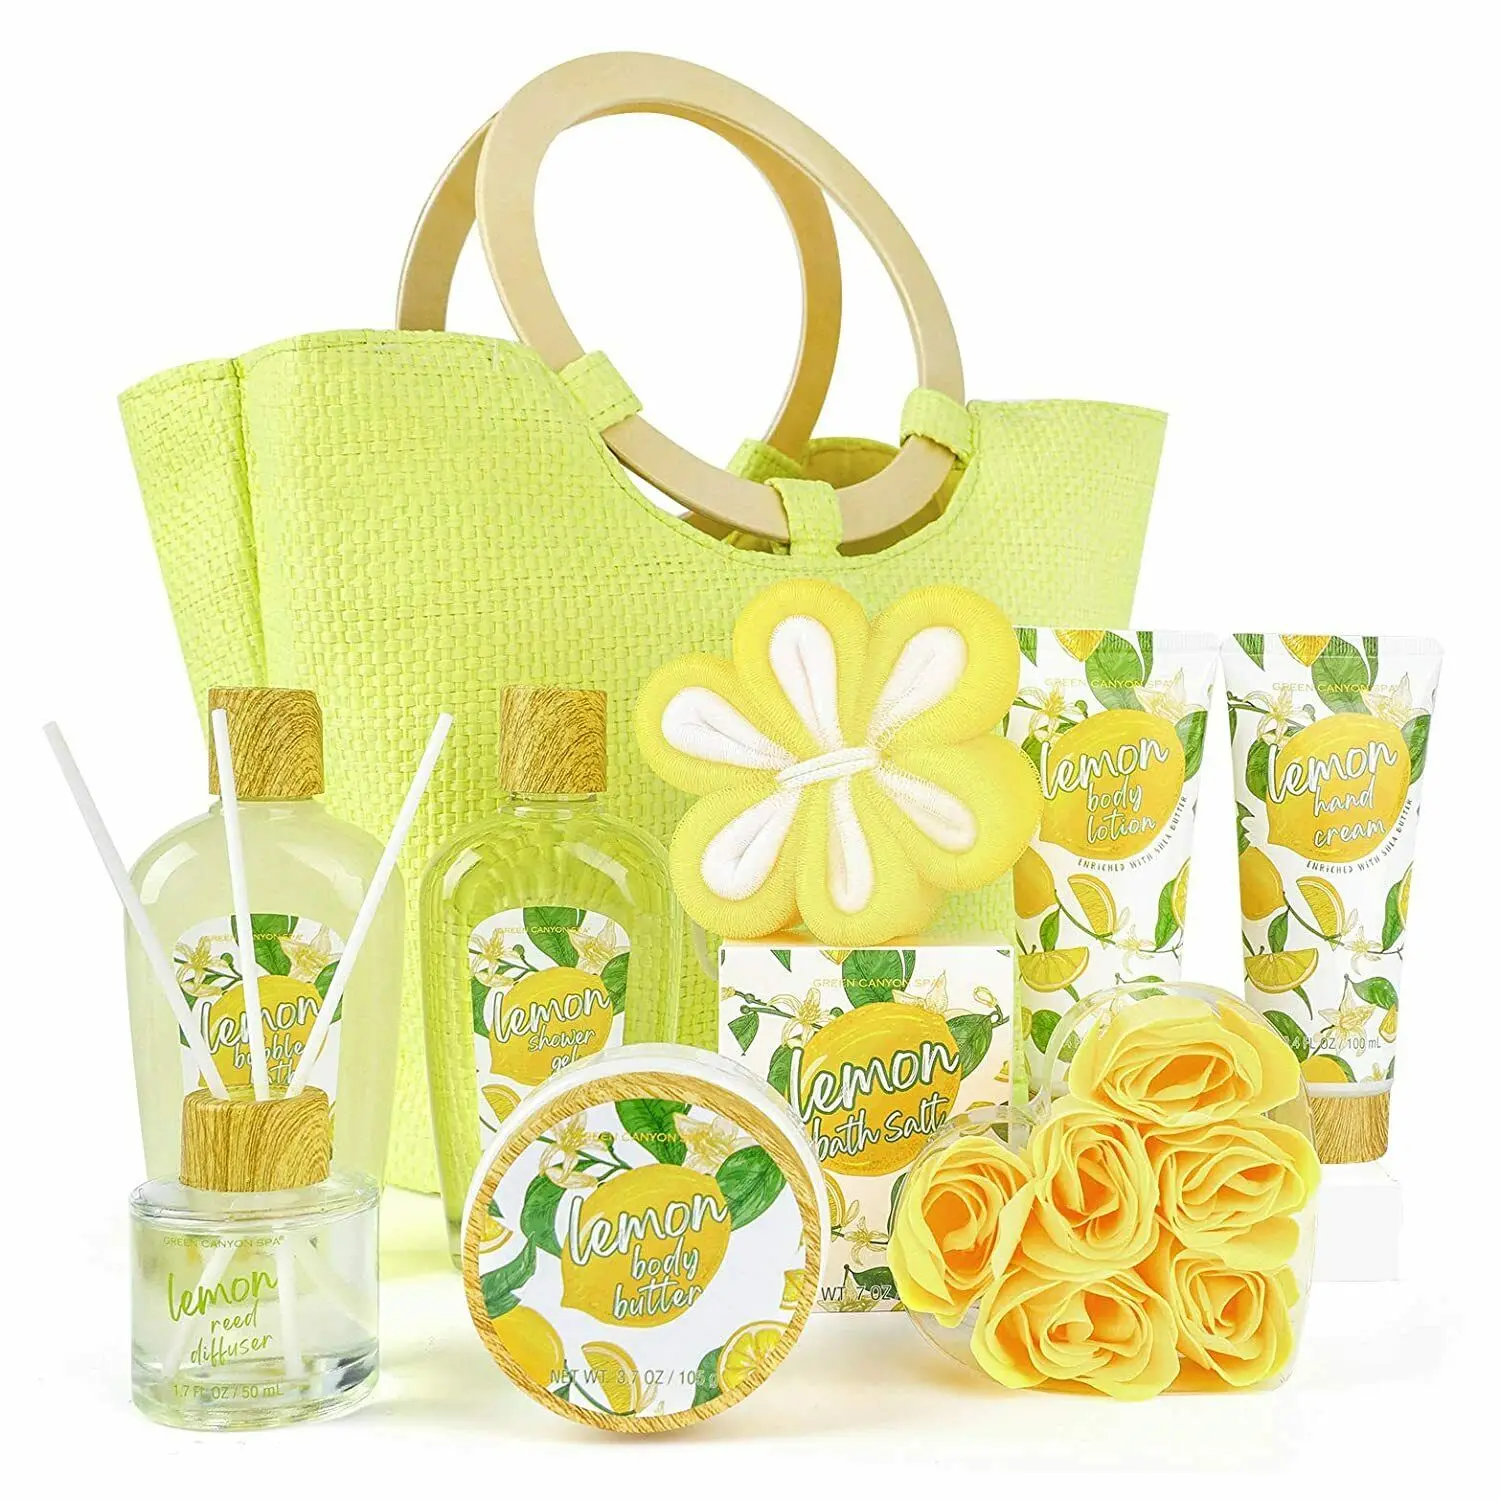 Lemon Vitamin + C - Yoni Soap - Spa Gift Basket for Women, 10pcs Bath & Body Set, Gift Set for Women